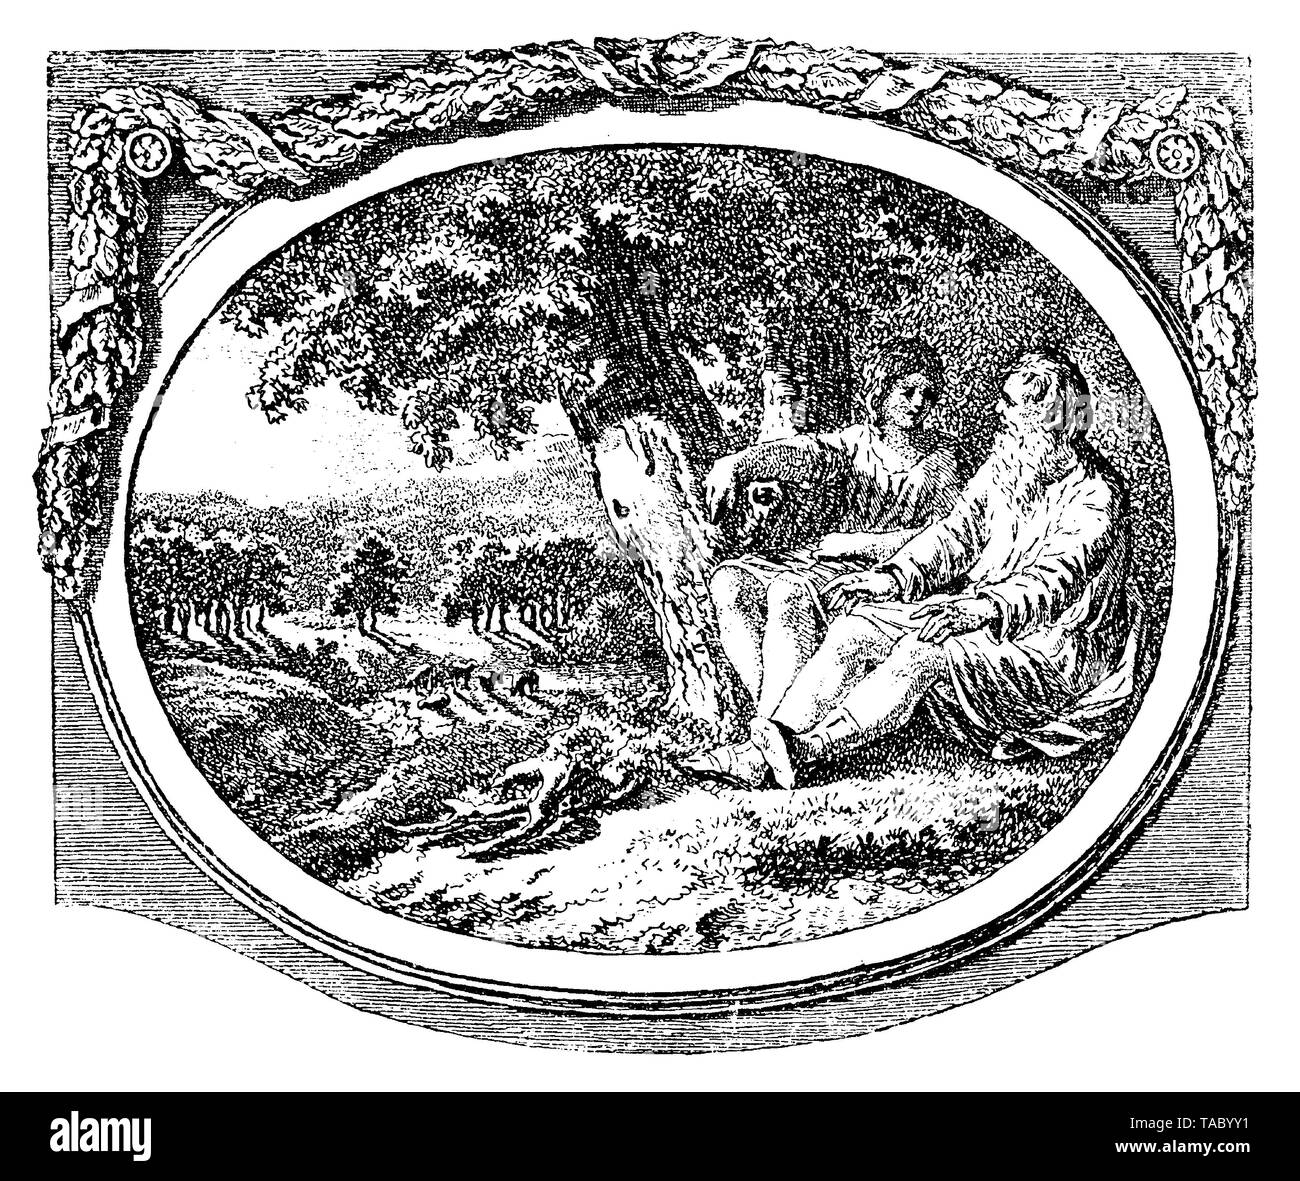 Scène pastorale avec un vieil homme et une jeune femme comme deux dieux grecs assis sous l'ombre d'un arbre, chapitre décoration par Salomon Gessner 18e siècle Banque D'Images